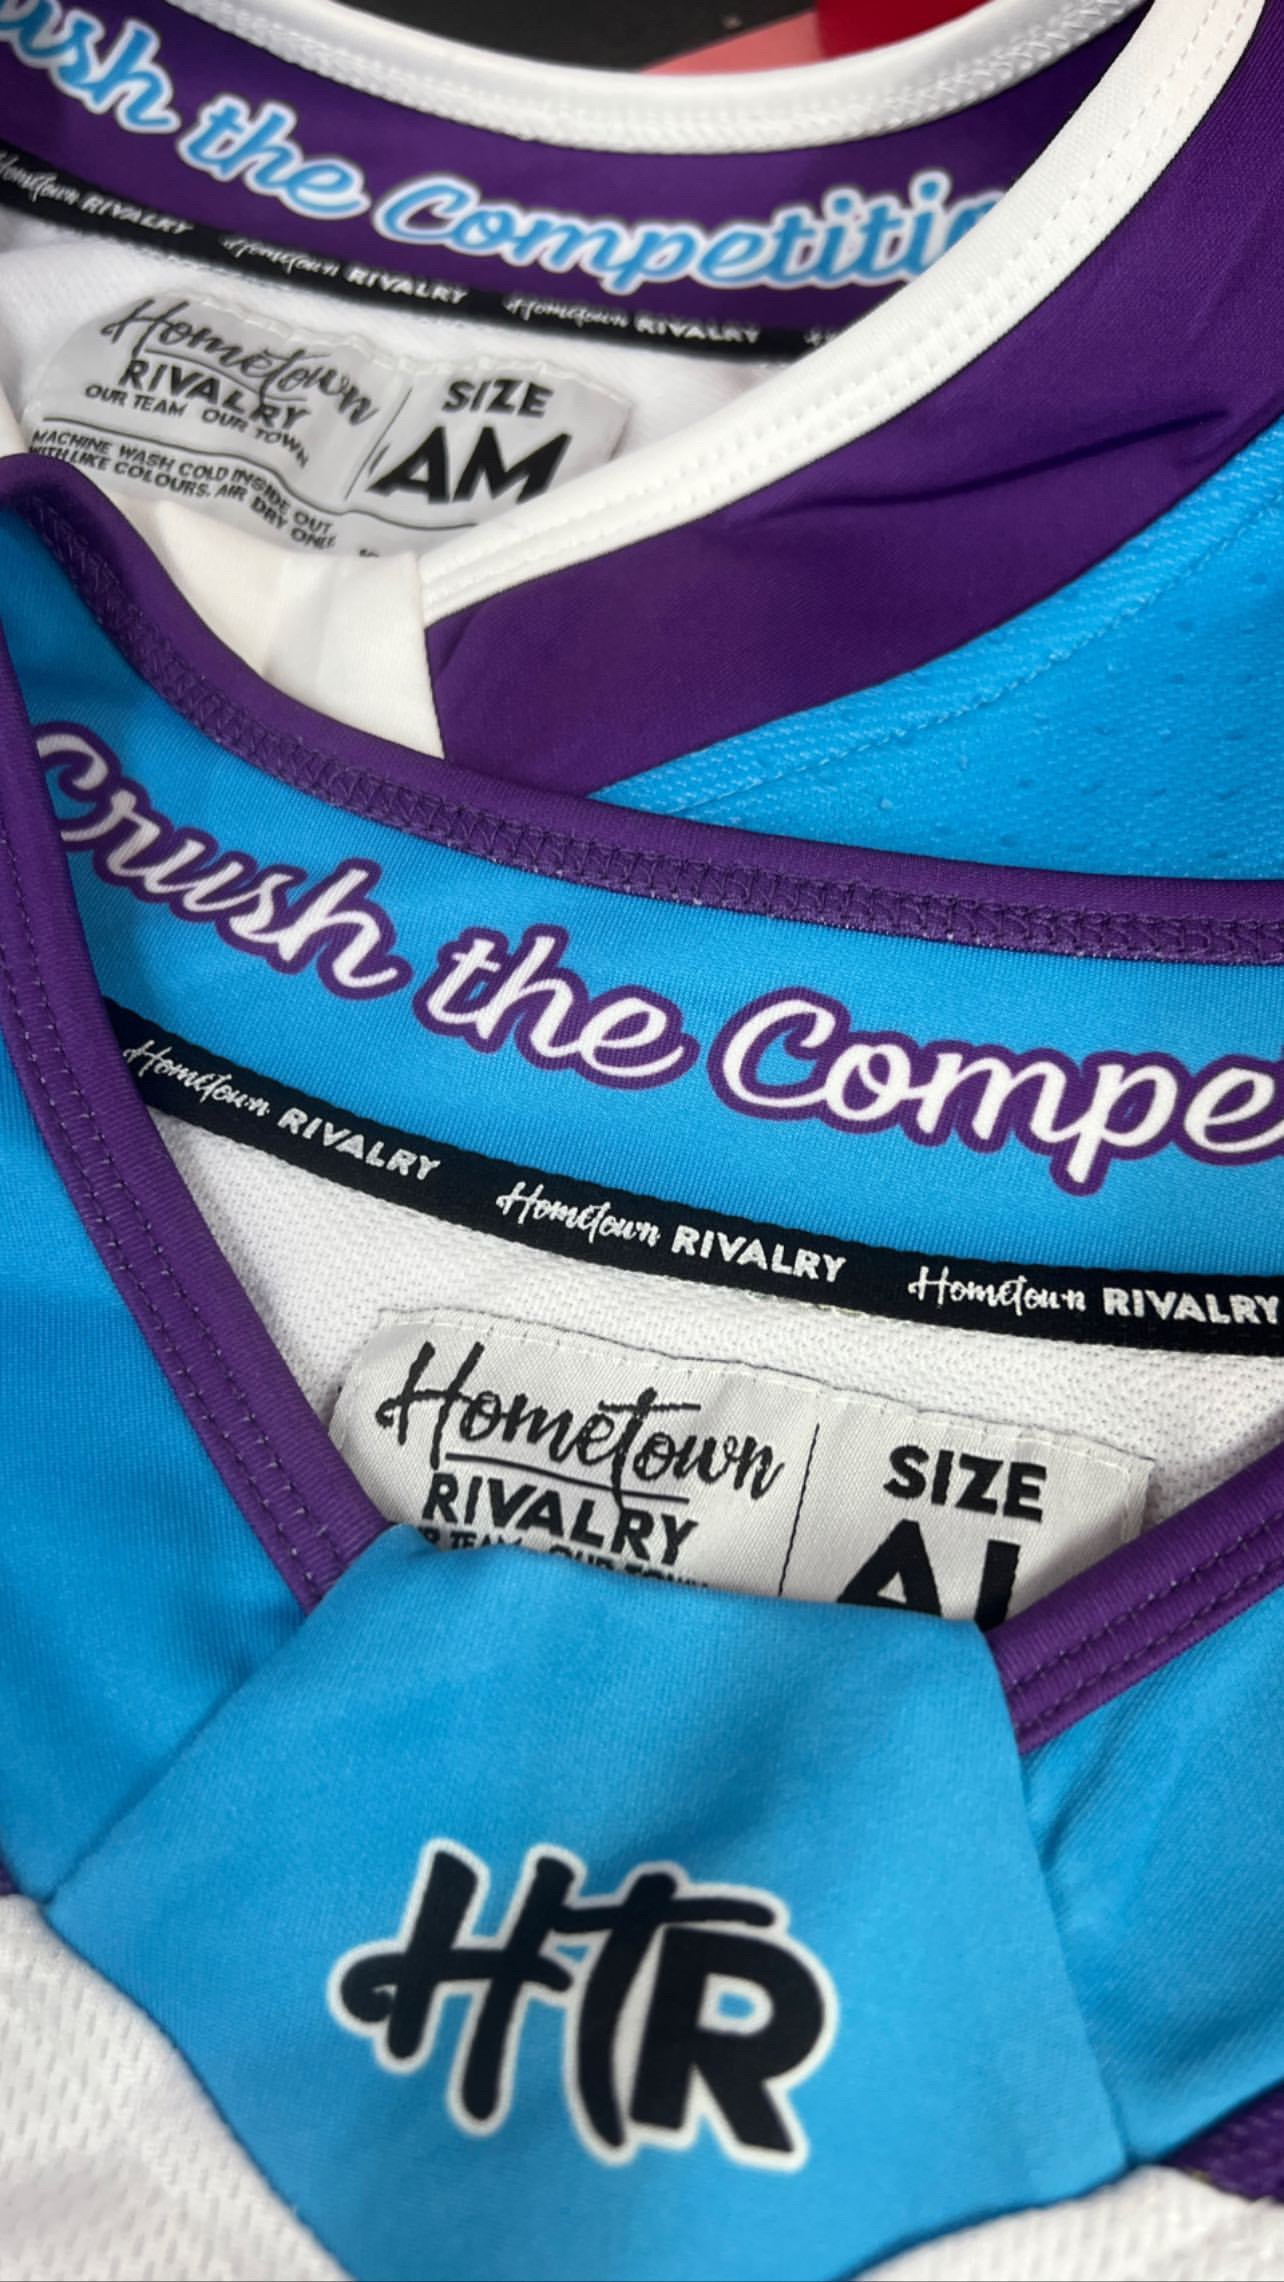 HTR custom jersey details